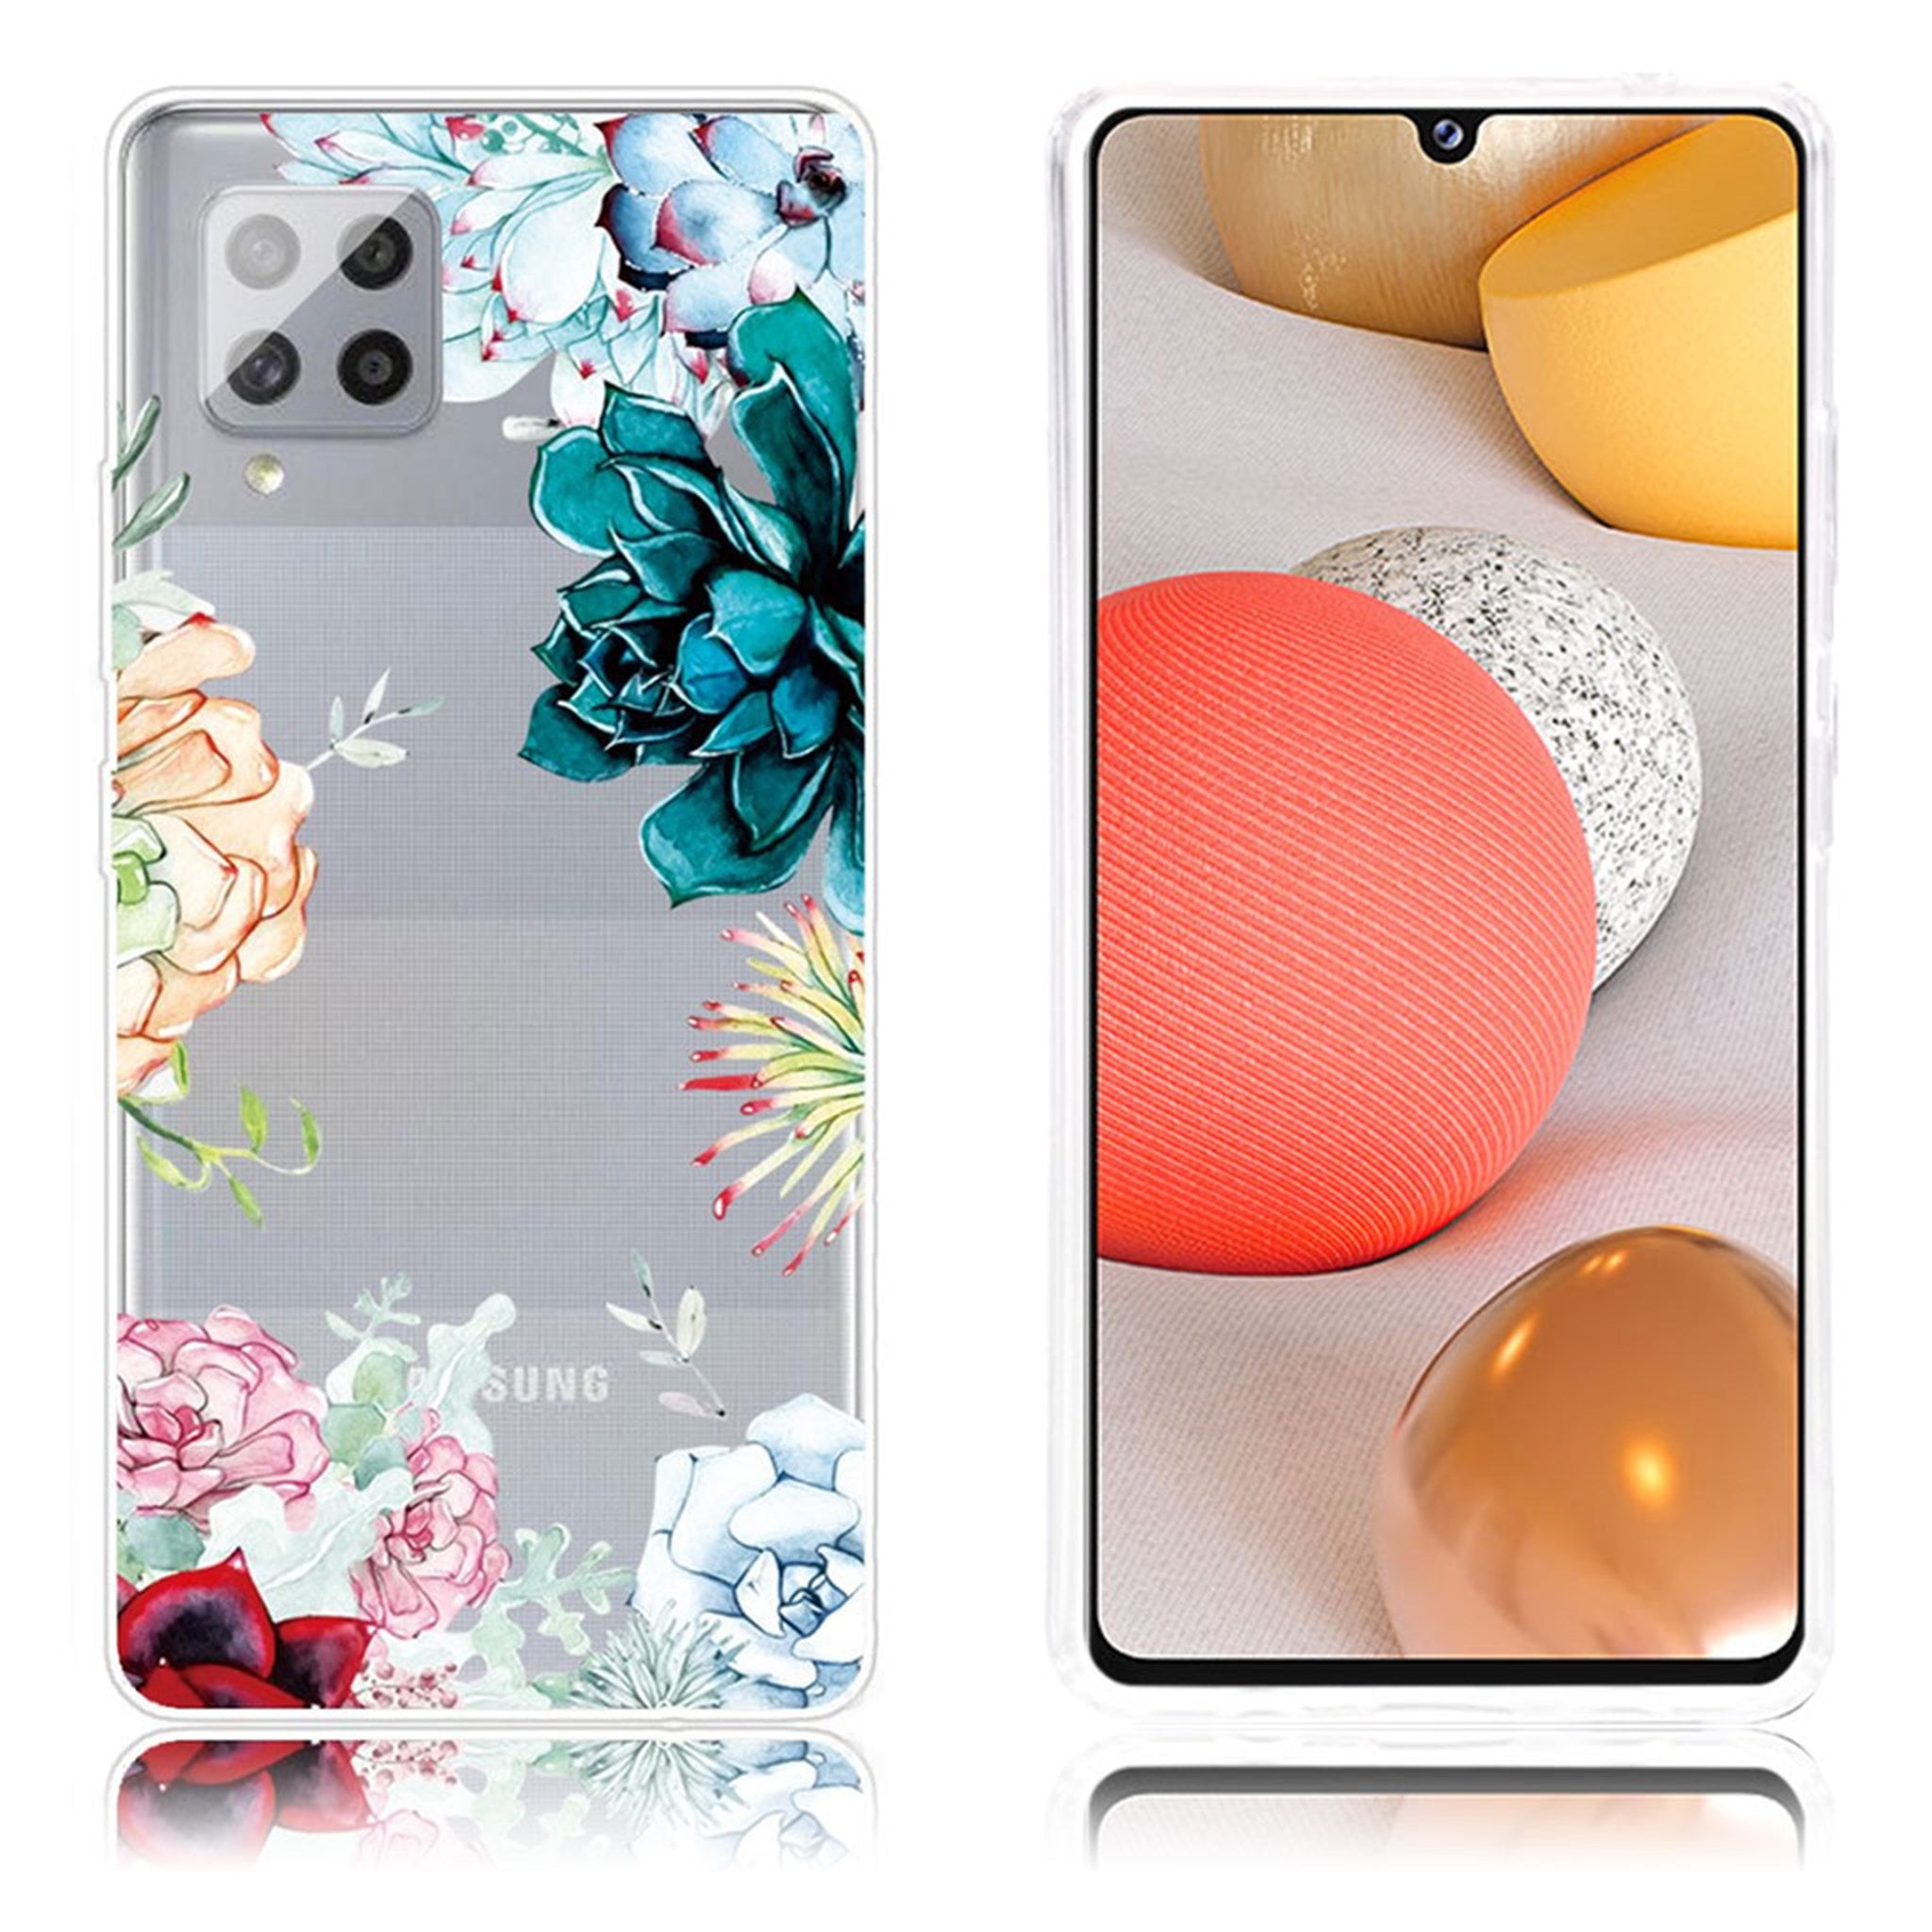 Deco Samsung Galaxy A42 5G case - Flower